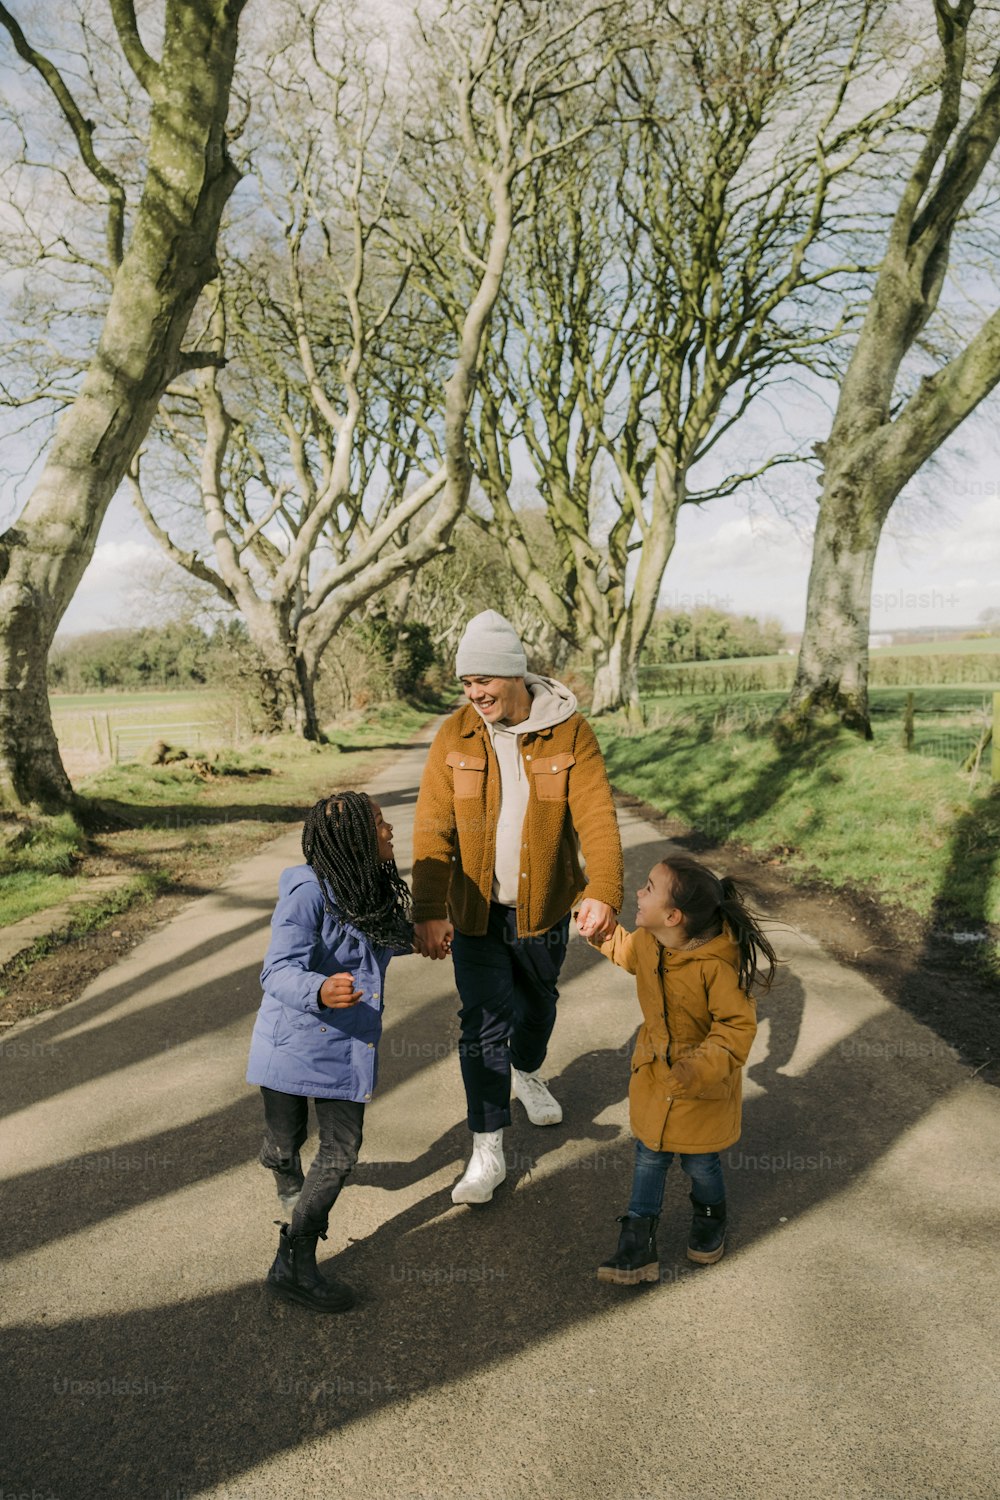 Un hombre y dos niños caminando por un camino